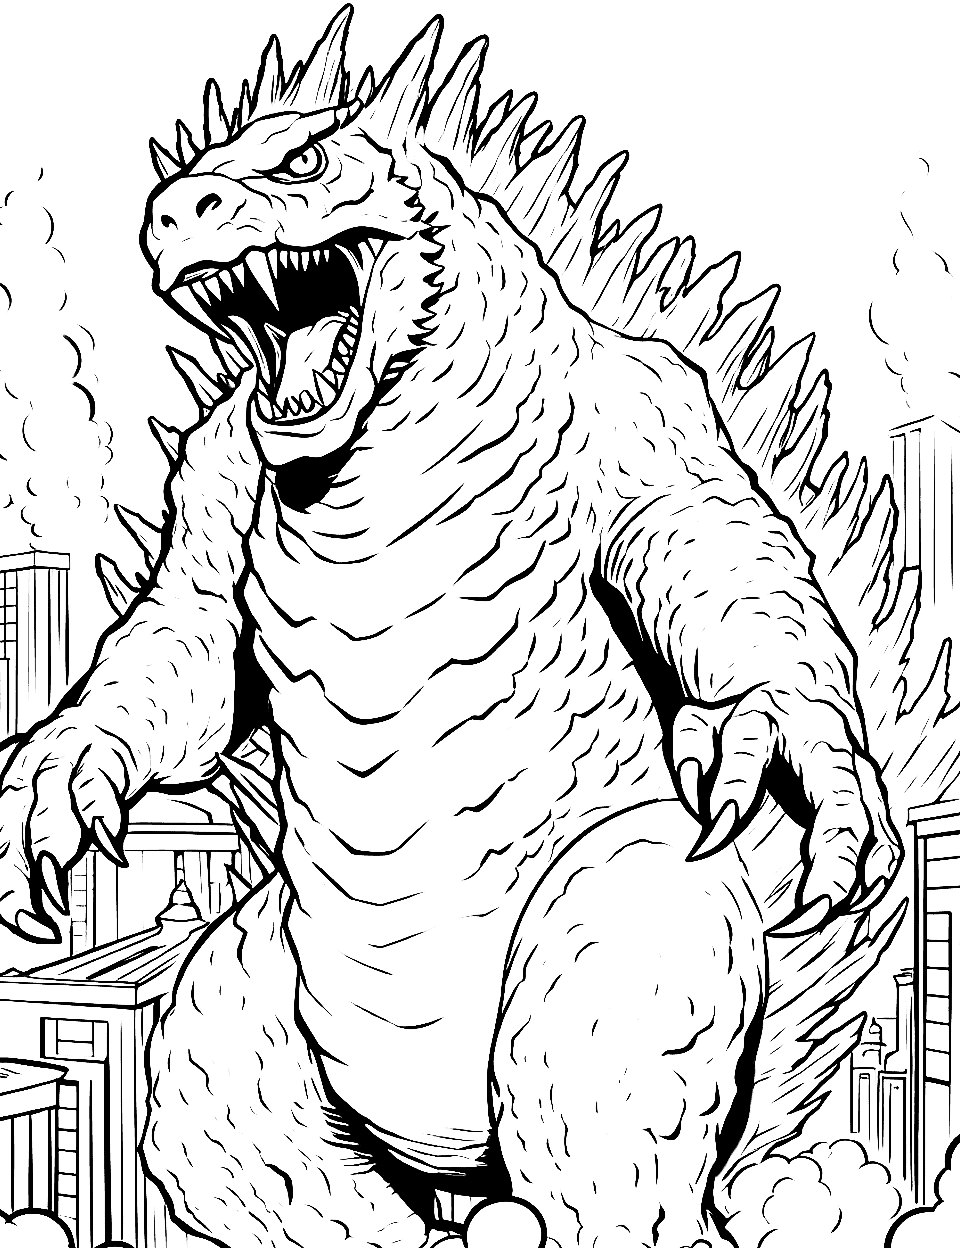 Godzilla's Fiery Breath Coloring Page - Godzilla getting ready to unleash its iconic atomic breath.